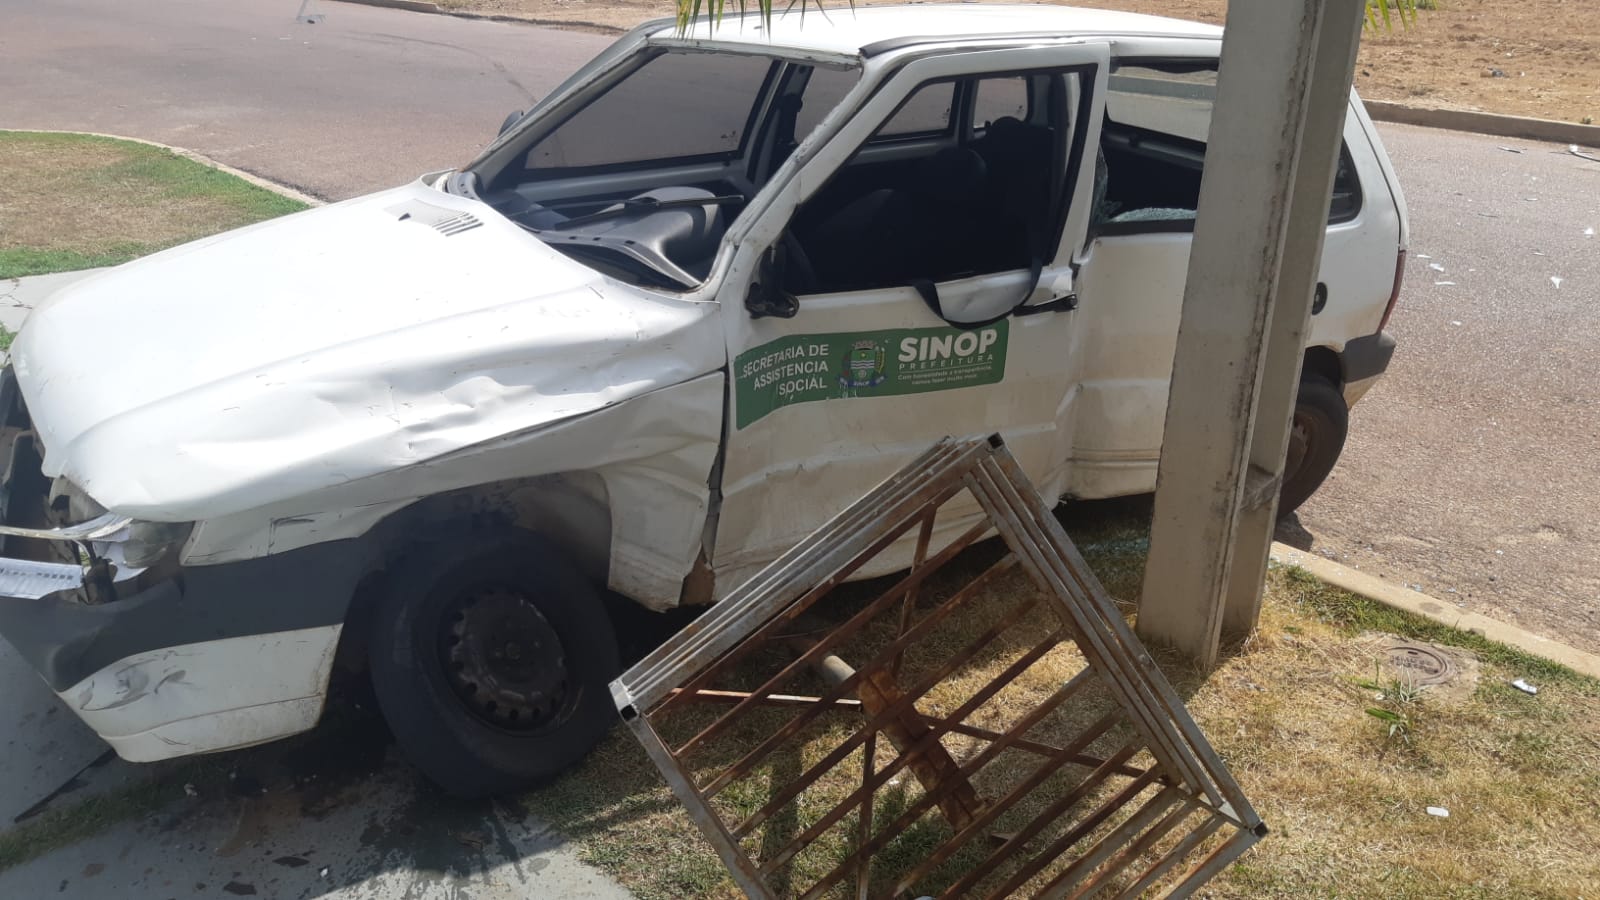 SINOP: Carro da Prefeitura se envolve em acidente e servidora será operada